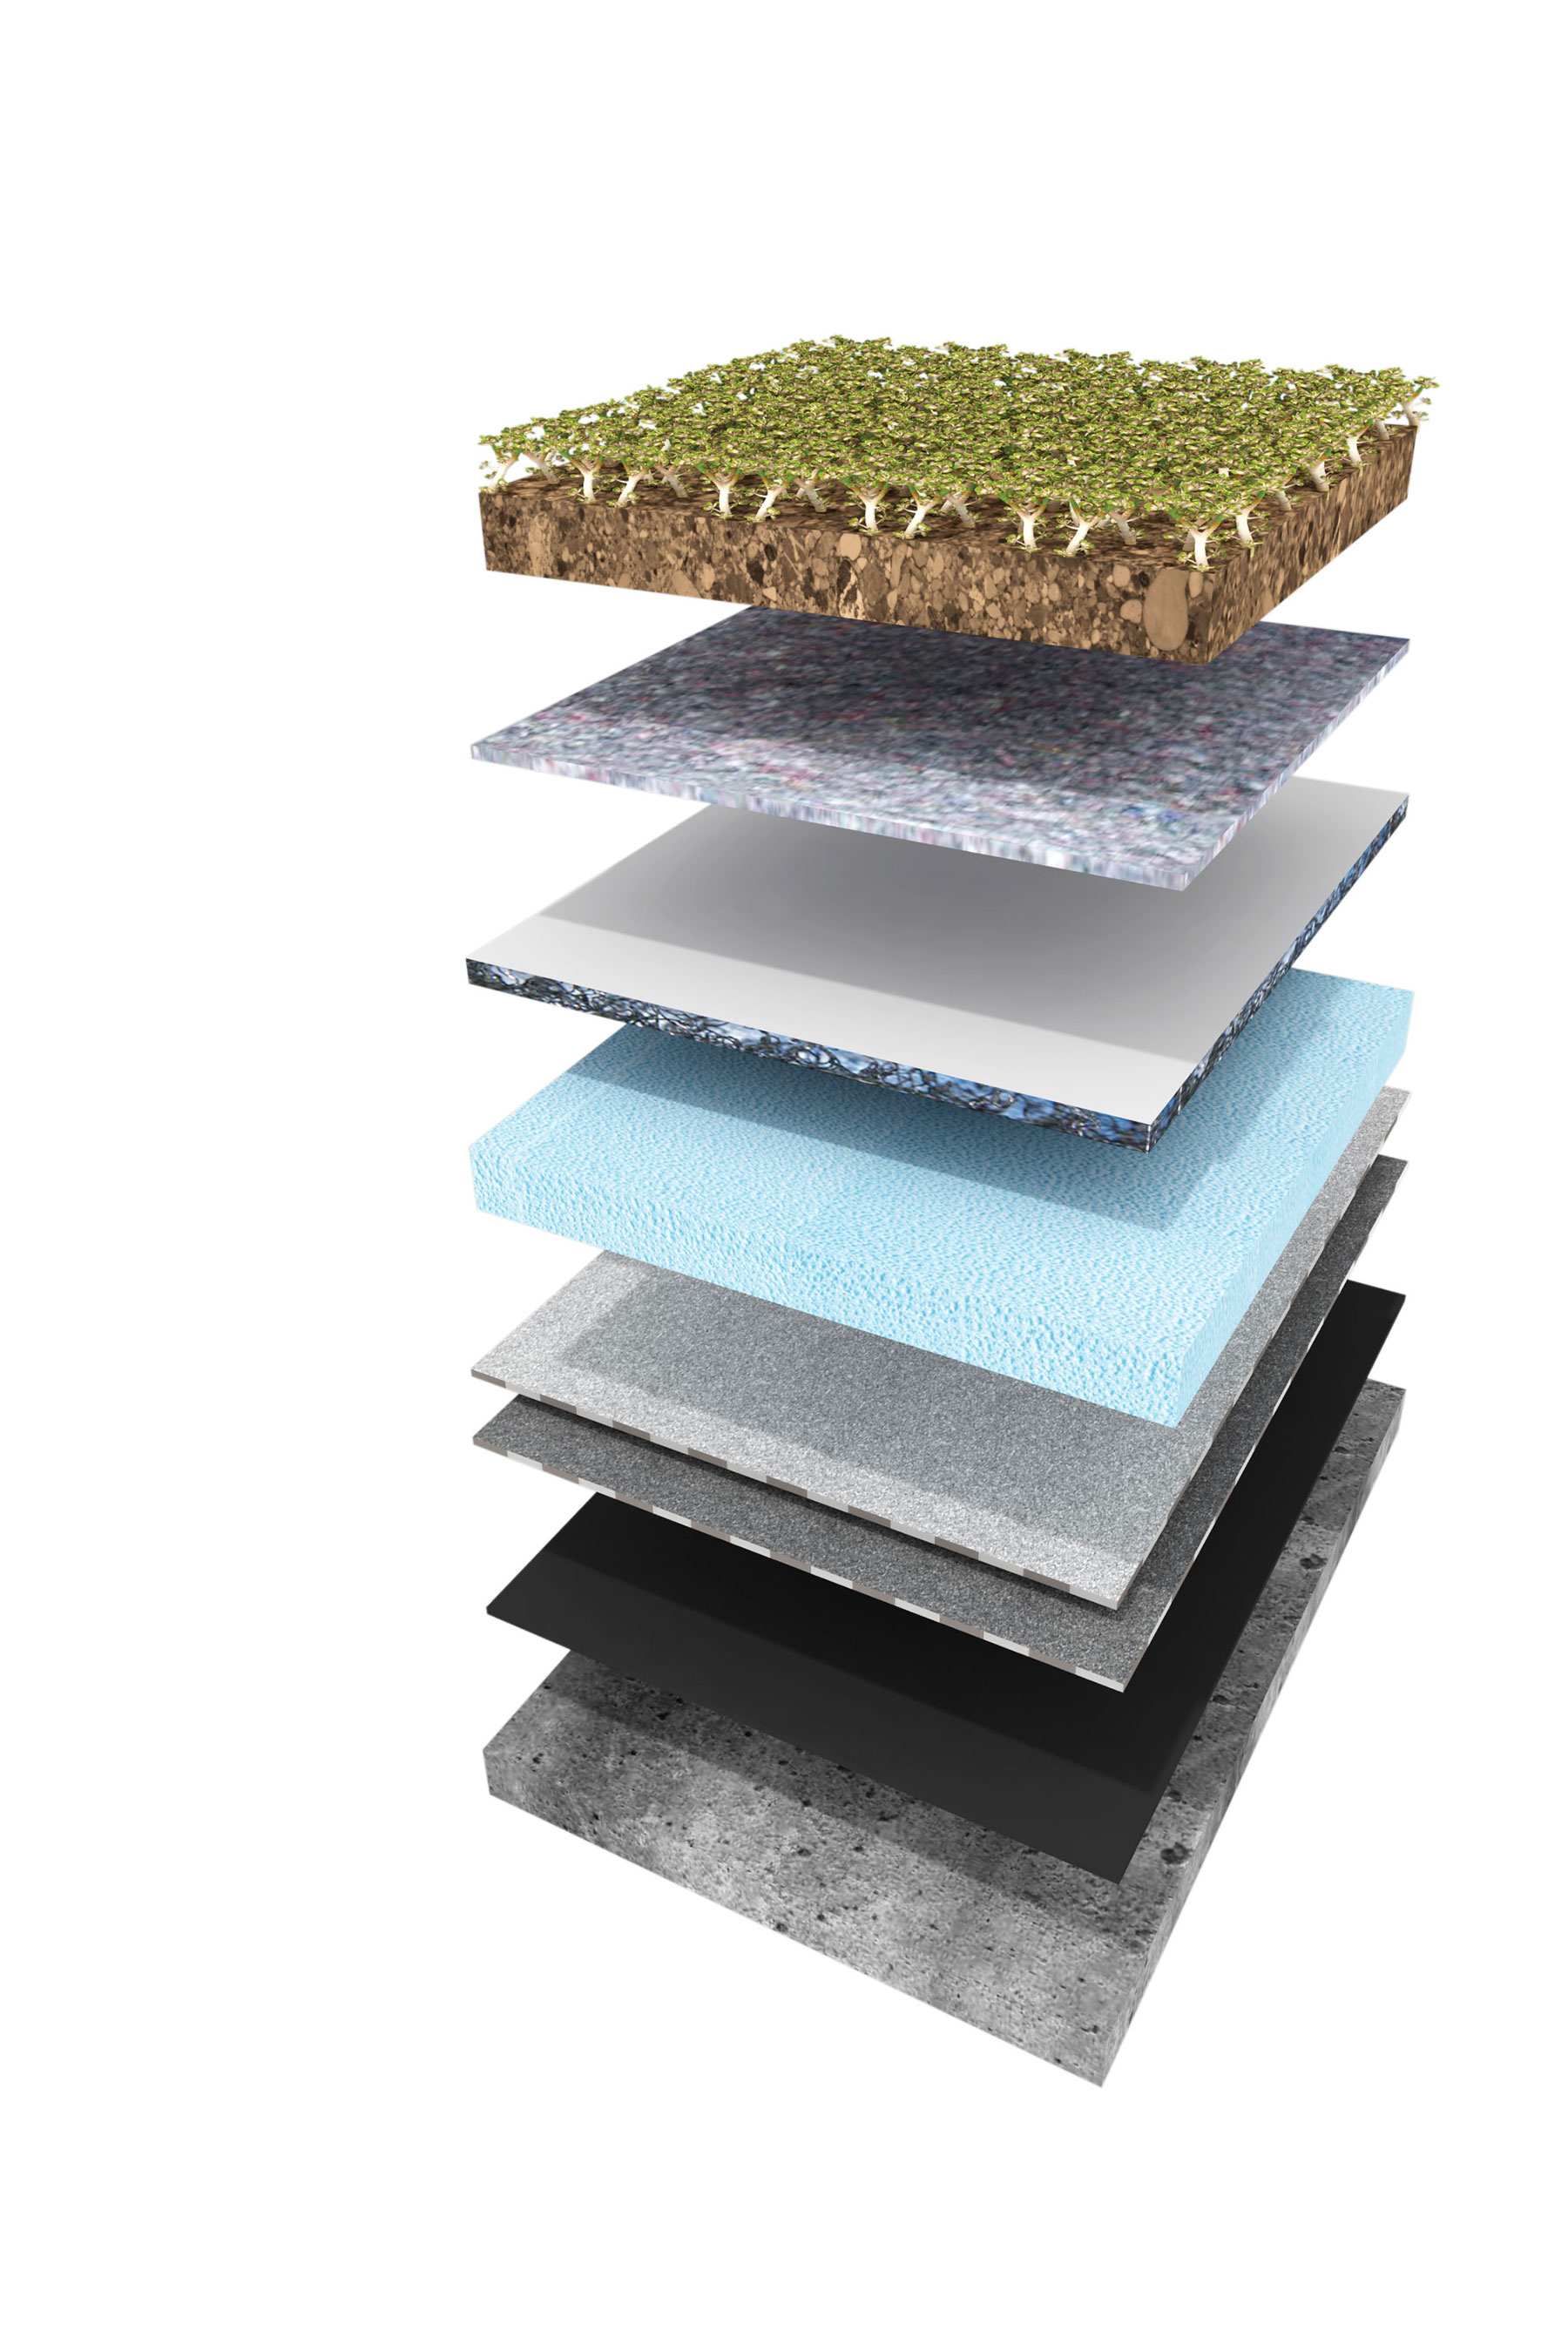 Skladba strešného plášťa Zelená strecha Icopal s obráteným poradím vrstiev 1 – hotová vegetačná vrstva Icomat Green 317 (sklon strechy do 6°)* 2 – retenčno-mikrodrenážna vrstva – 7x Icomat 140 3 – drenážna vrstva Icodren 10 Speed Drainage® SBS (pri plochých strechách) 4 – tepelná izolácia lepená na podklad asfaltovým lepidlom Siplast Glue® Speed SBS 5 – penetračný náter Siplast Primer® Speed SBS, podkladový asfaltovaný pás modifikovaný SBS kaučukom Elastobit GG 40, vrchný asfaltovaný pás modifikovaný SBS kaučukom s funkciou ochrany proti prerastaniu koreňov rastlín Graviflex 5,2 Green Roof alebo Graviflex 4,2 Green Roof 6 – nosná konštrukcia * Pri strechách so sklonom väčším ako 6° závisí druh vegetačnej rohože od sklonu a tvaru strechy a vyžaduje si konzultáciu so zástupcom firmy Icopal.